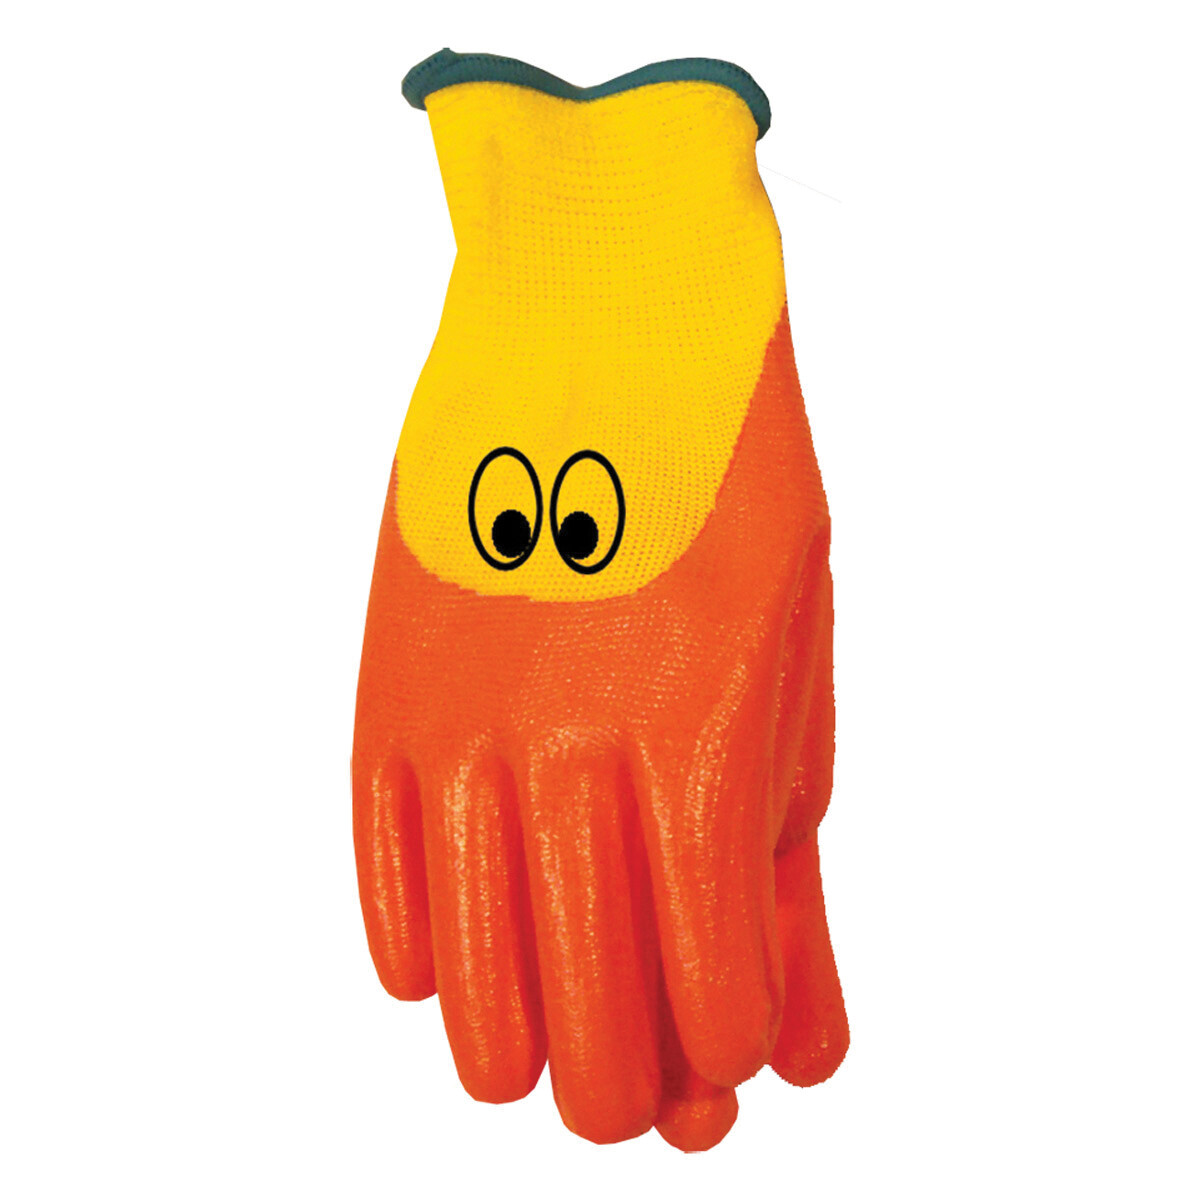 Garden Gloves - Ducky Glove for Kids